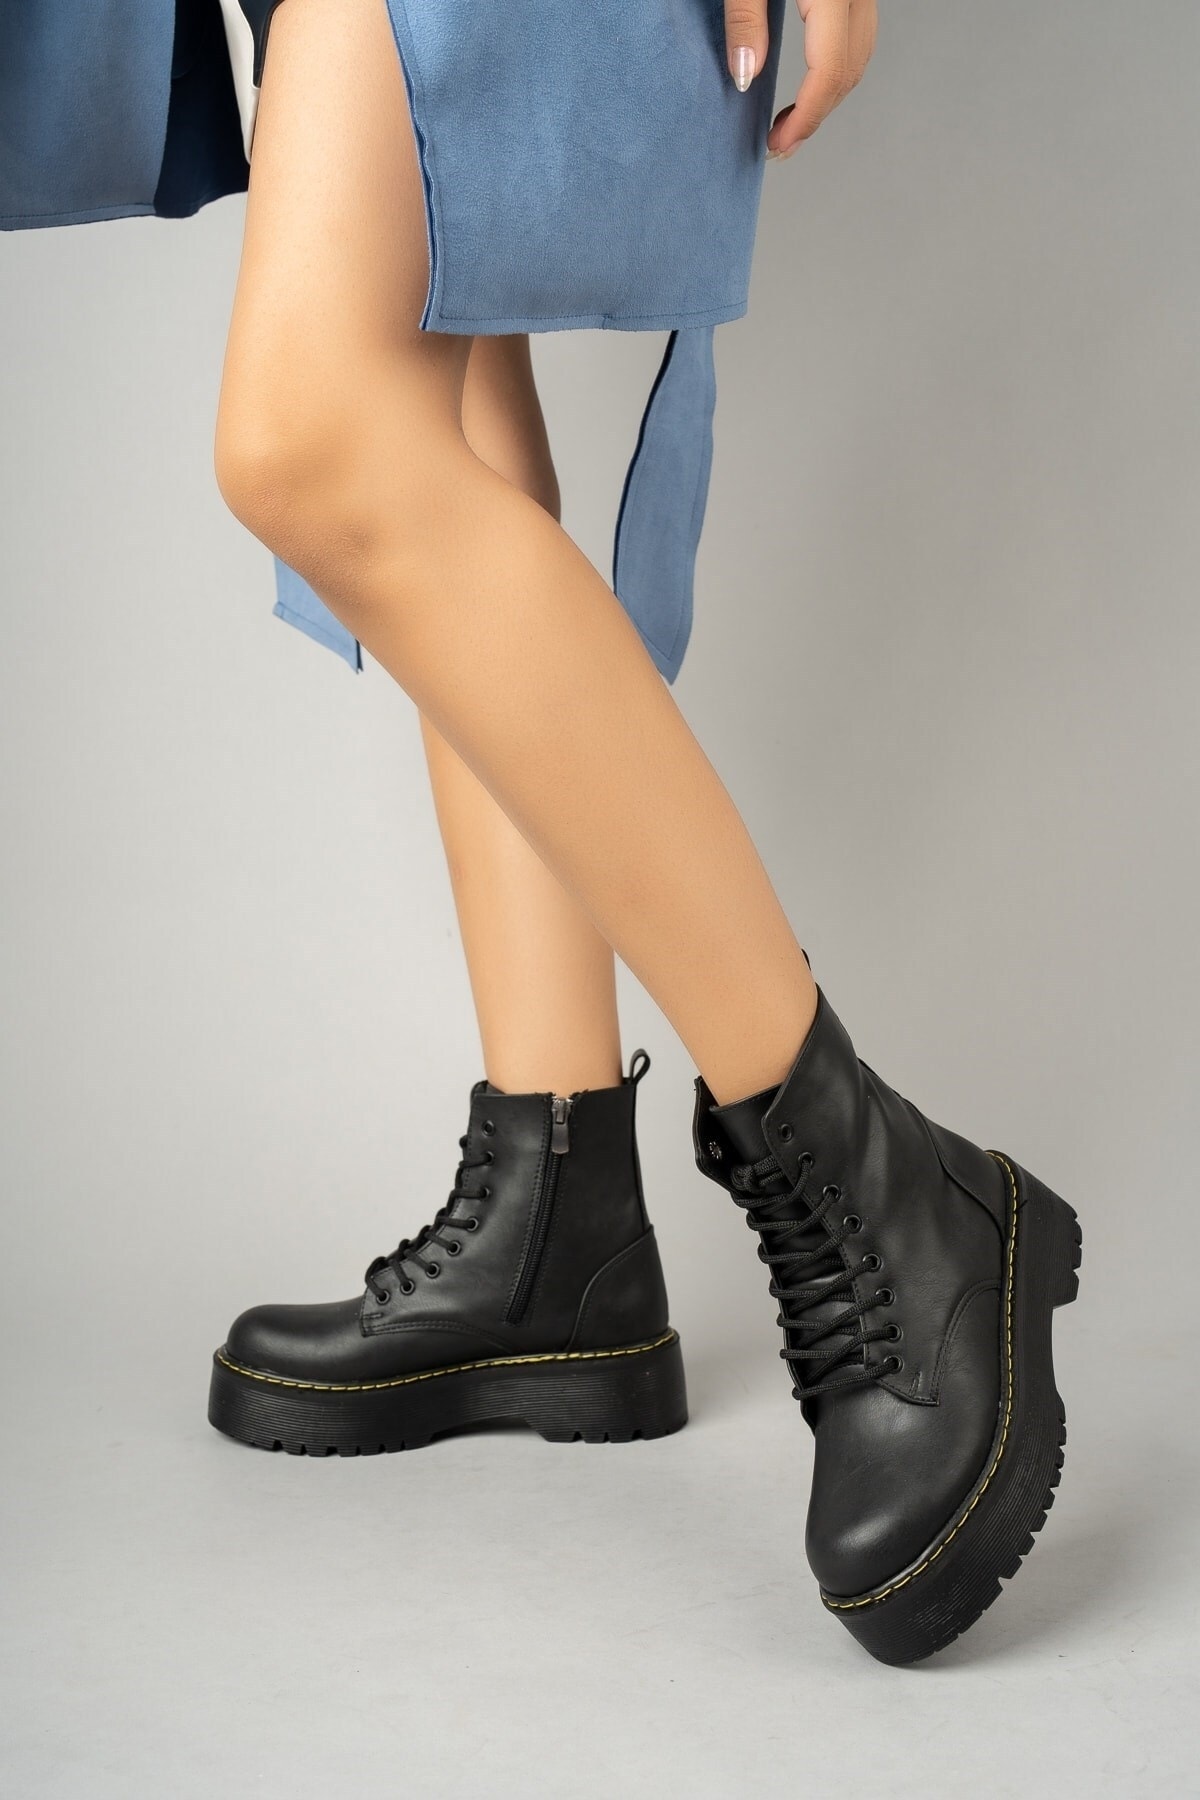 Ymn ayakkabı Kadın - Kız Kalın Taban Fermuarlı Ve Bağcıklı Siyah Cilt Postal Bot